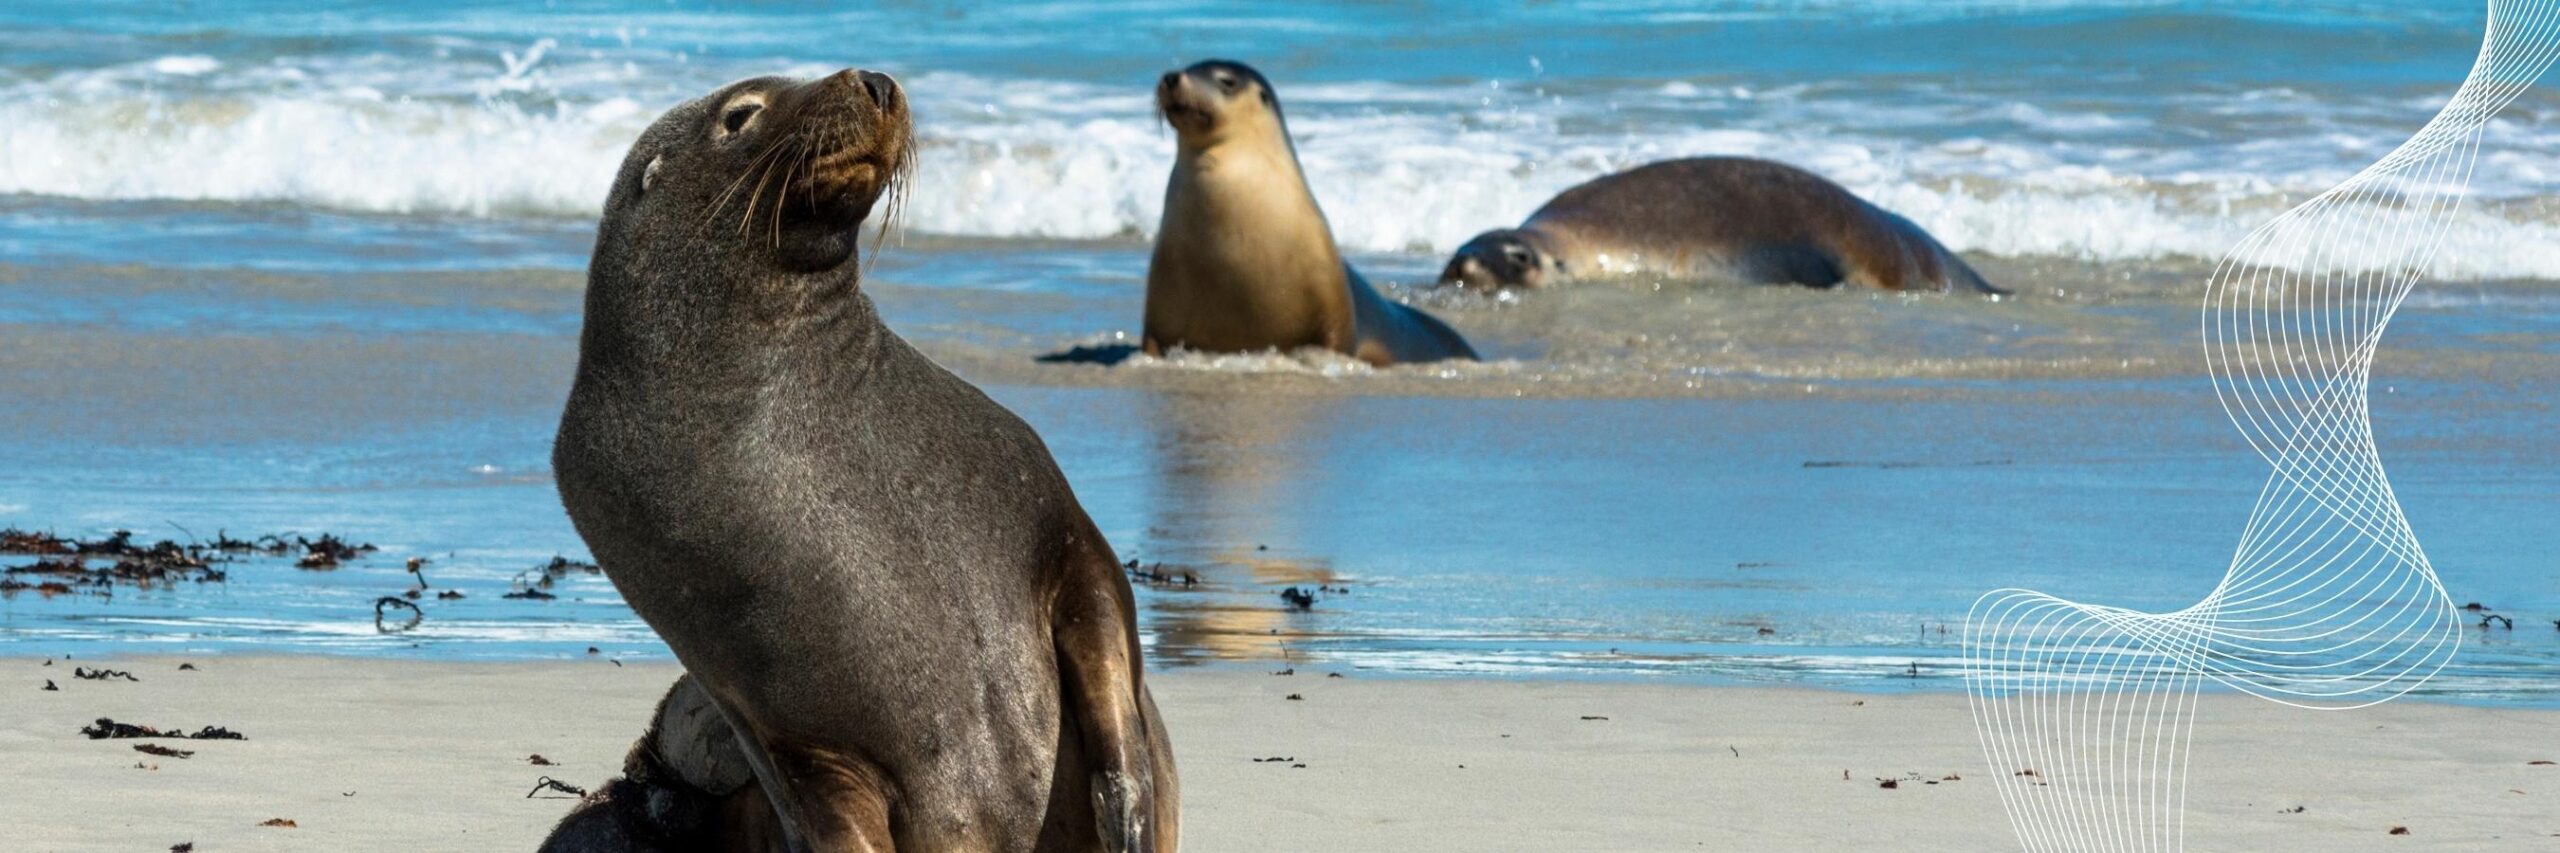 Galapagos Fur Seals